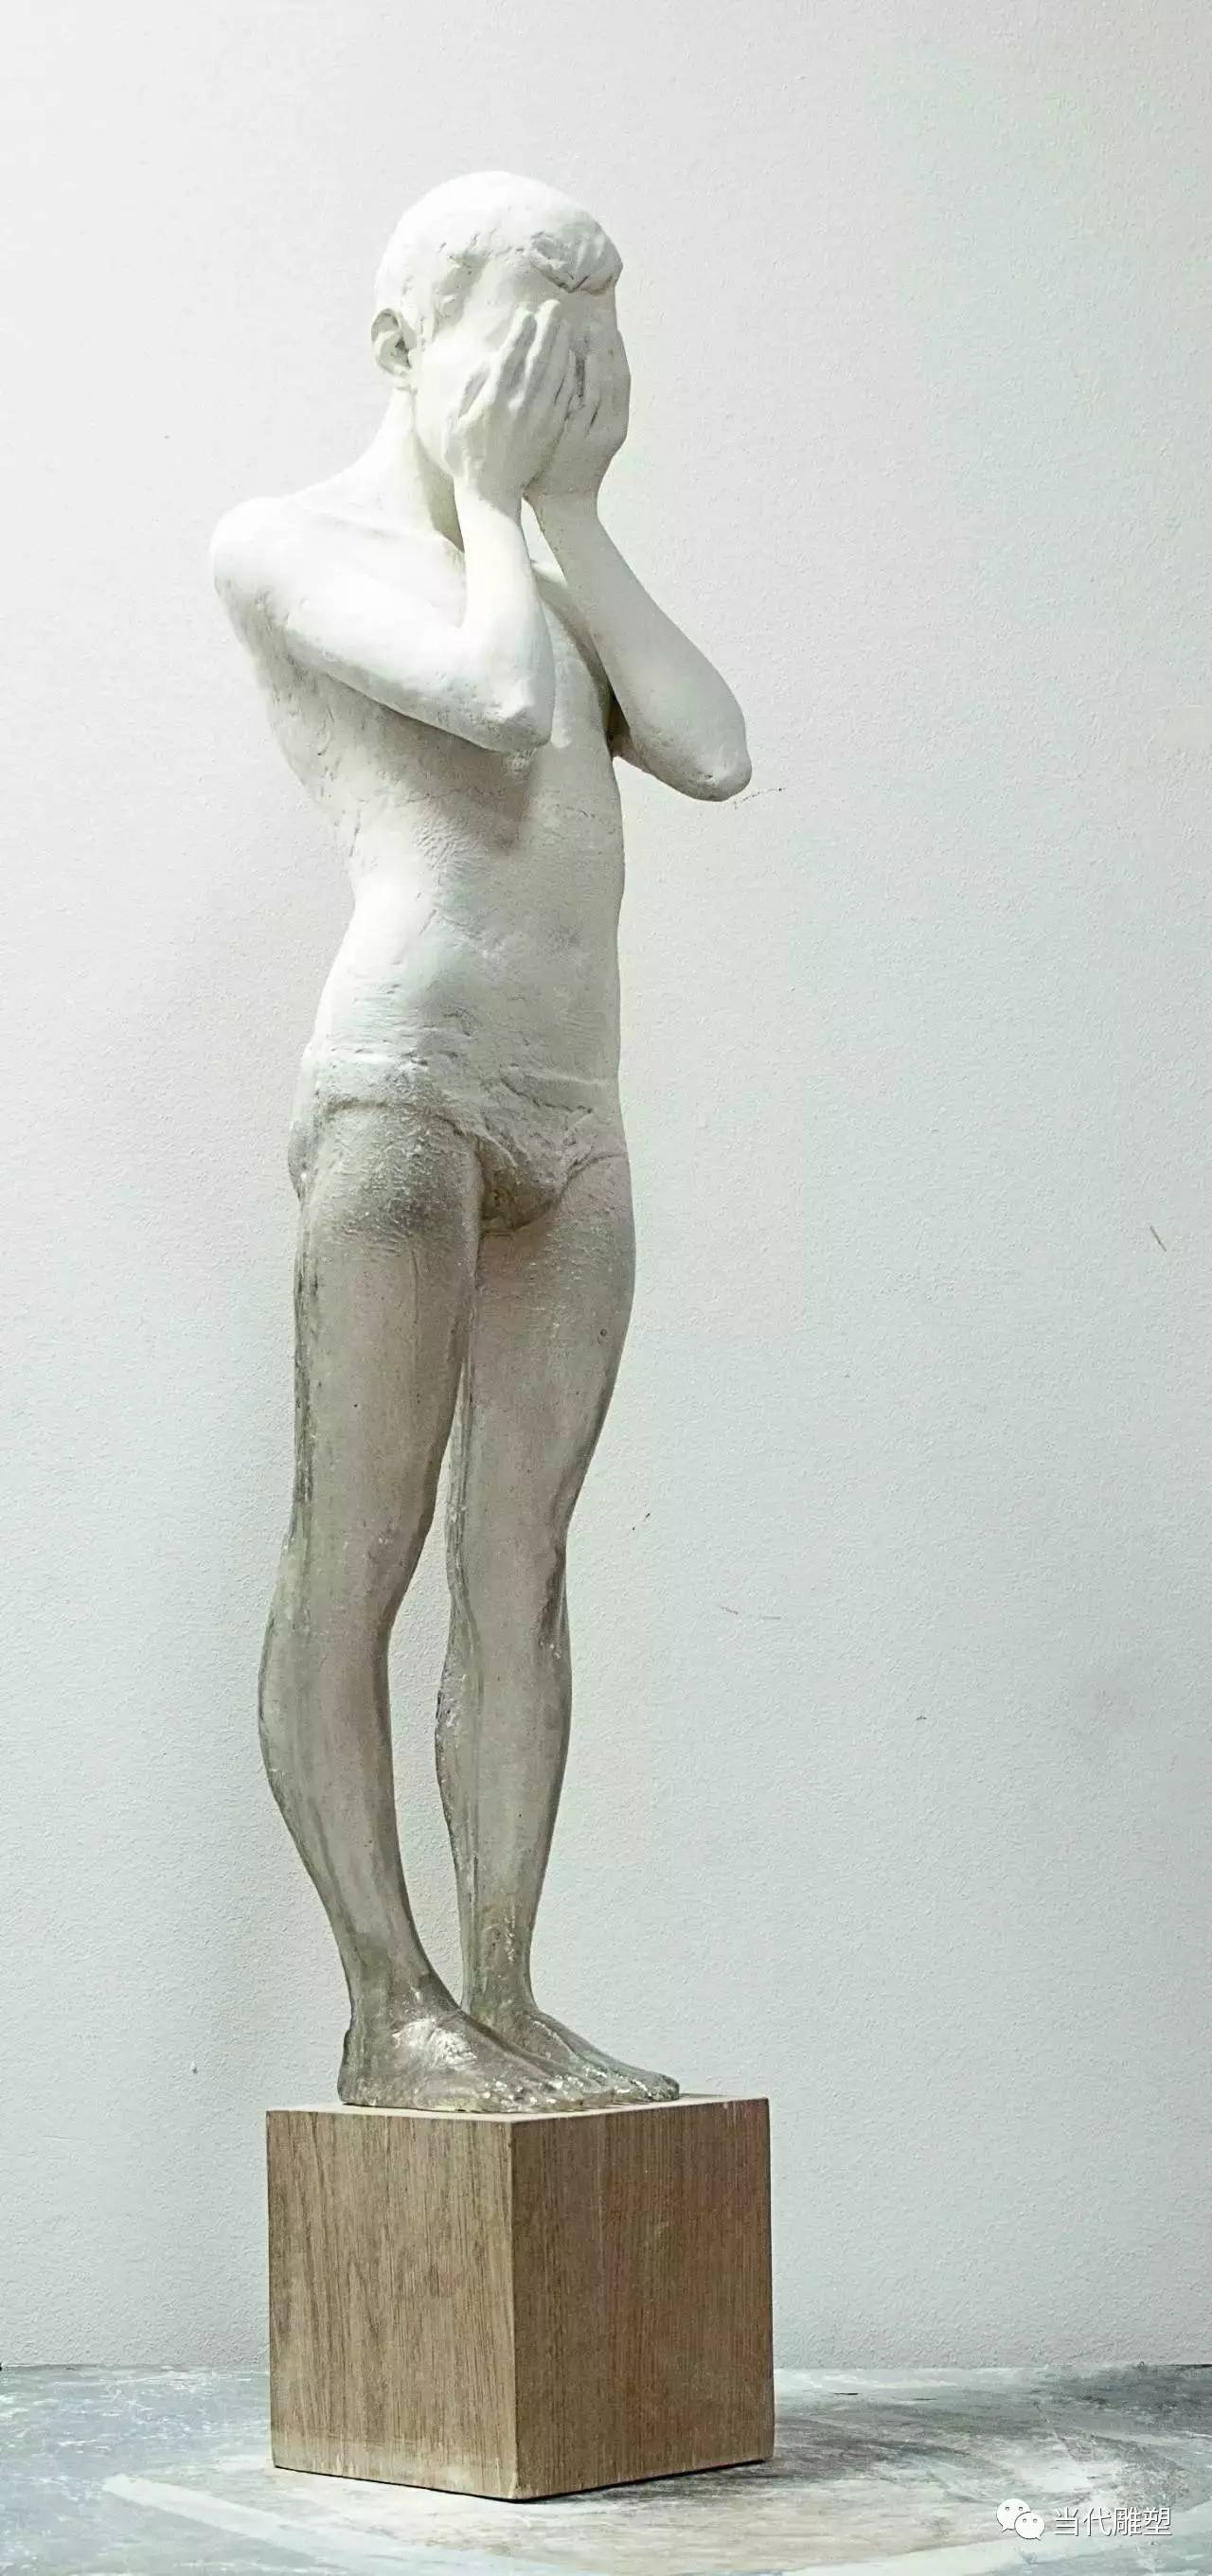 透明树脂人体雕塑